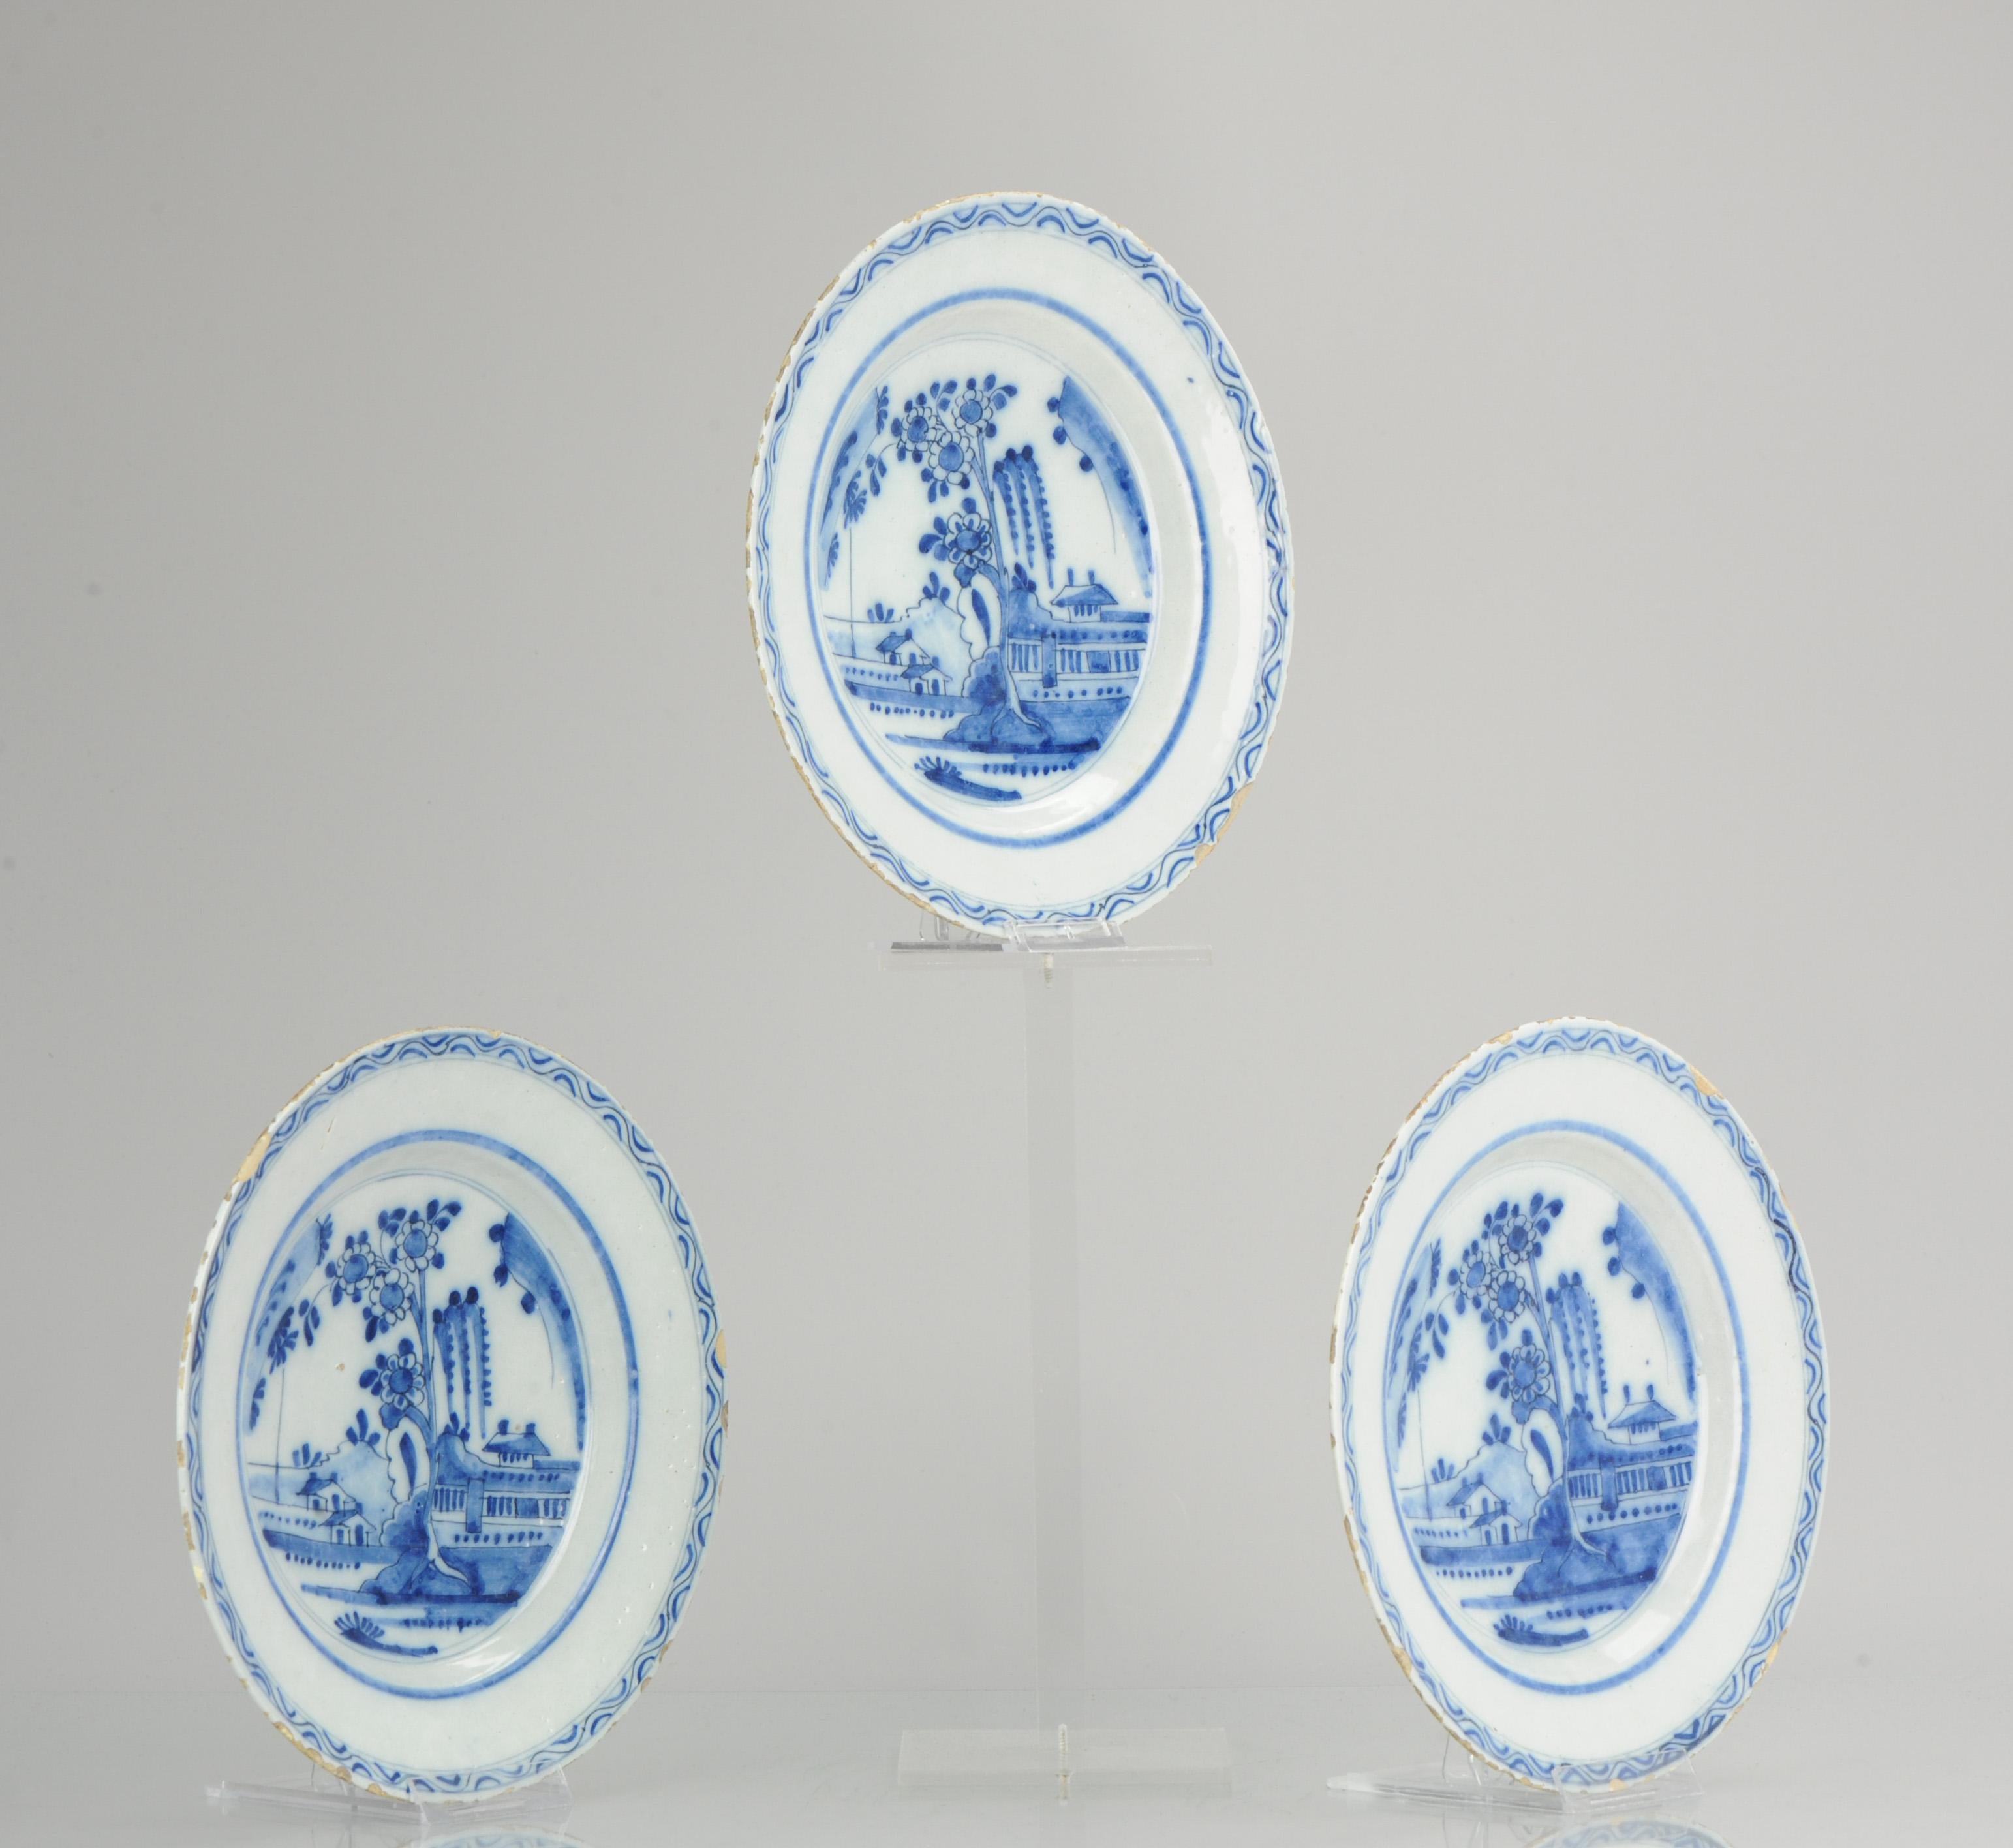 Sehr cool 17/18C Delft Porzellanteller mit handgemaltem Dekor. Inspiriert von chinesischen Stücken aus der gleichen Zeit. Sehr interessante Szene einer Gartenlandschaft mit Häusern und Scholarsrock.

Zusätzliche Informationen:
MATERIAL: